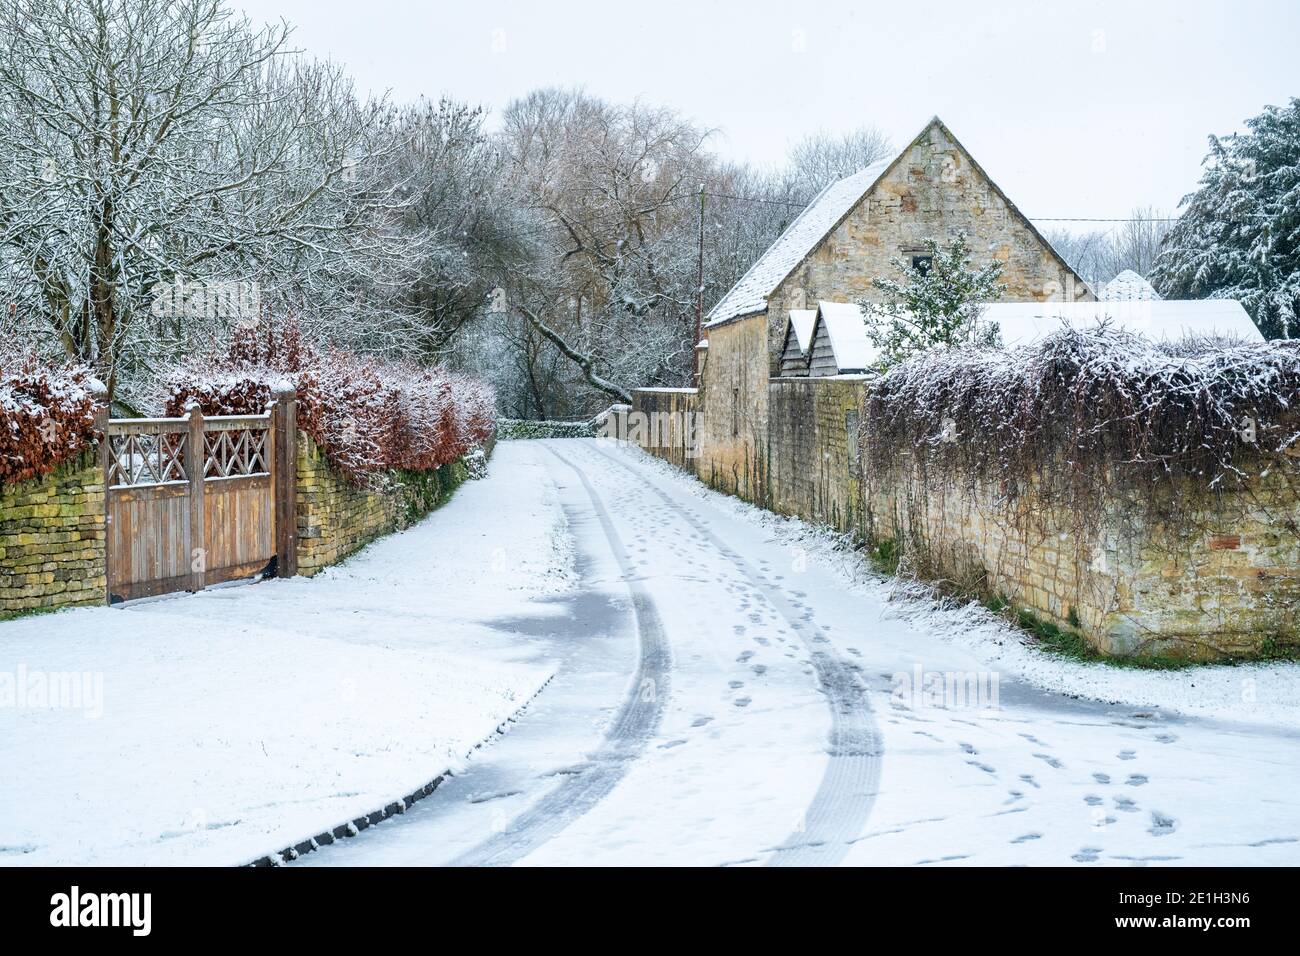 La campagne dans la neige à noël. Taynton, Cotswolds, Oxfordshire, Angleterre Banque D'Images